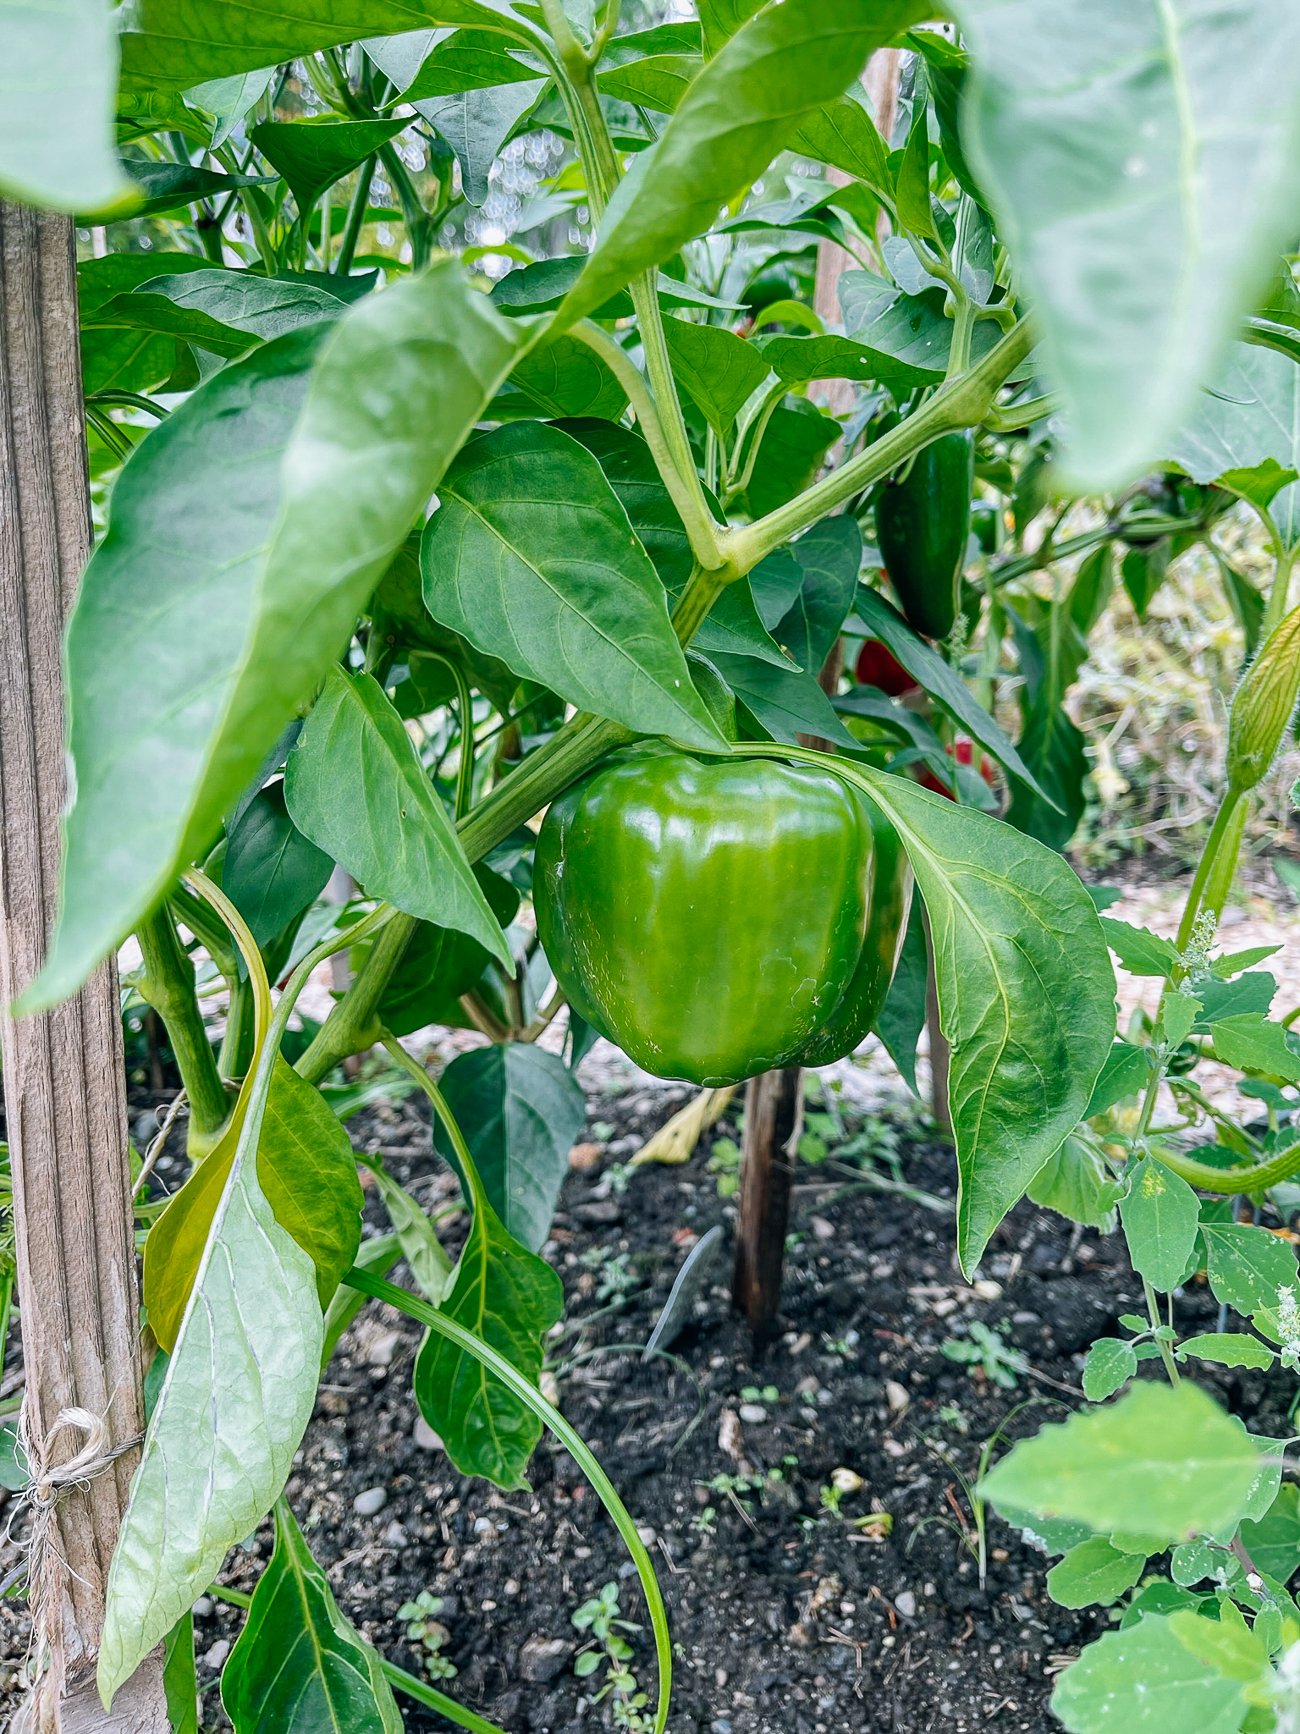 green bell pepper growing